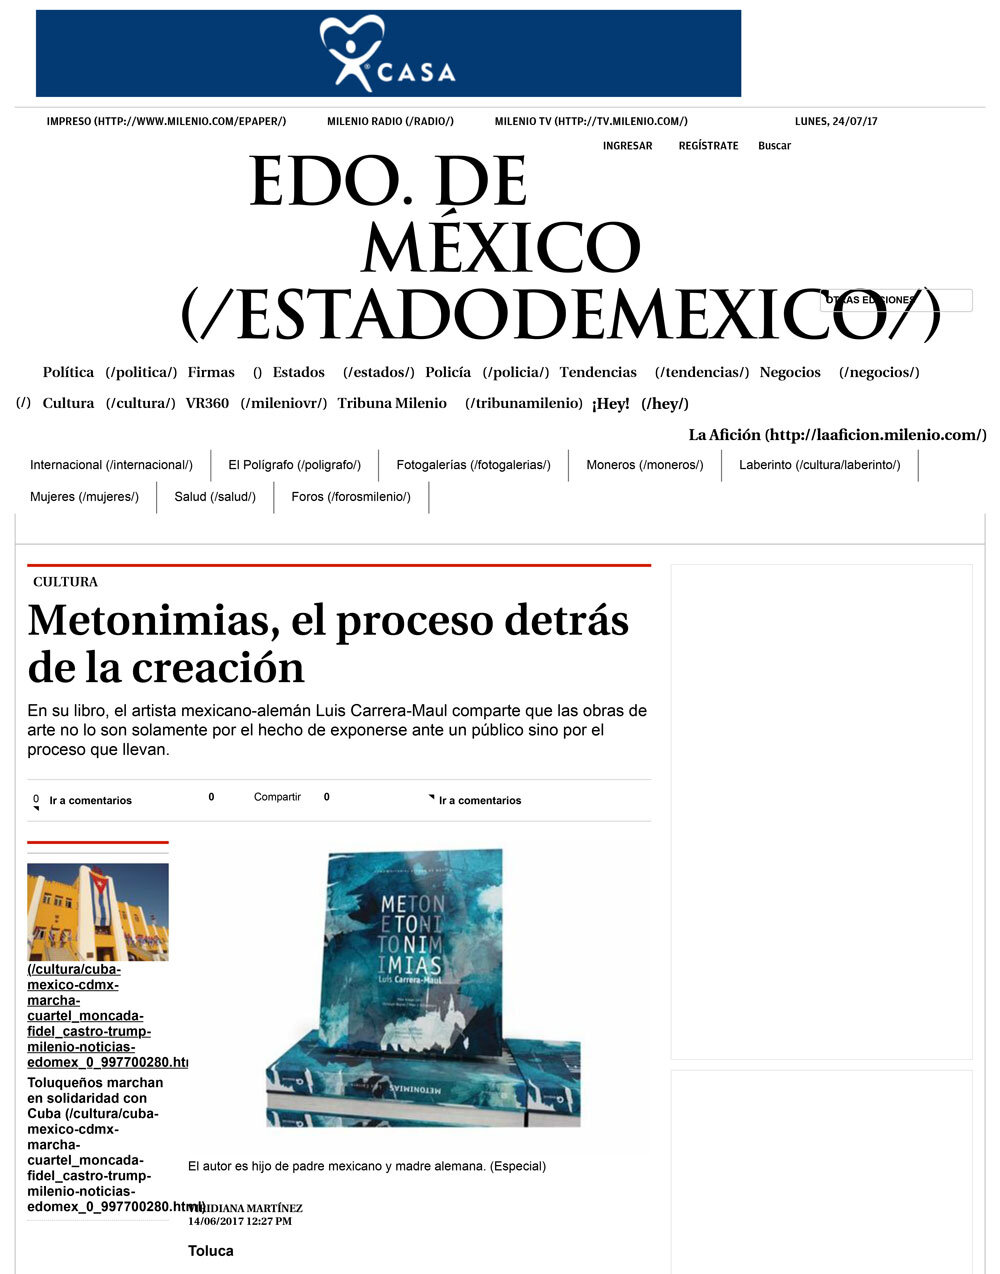 14-170614-Milenio-Cultura-Presentacion-Metonimias-Toluca.jpg